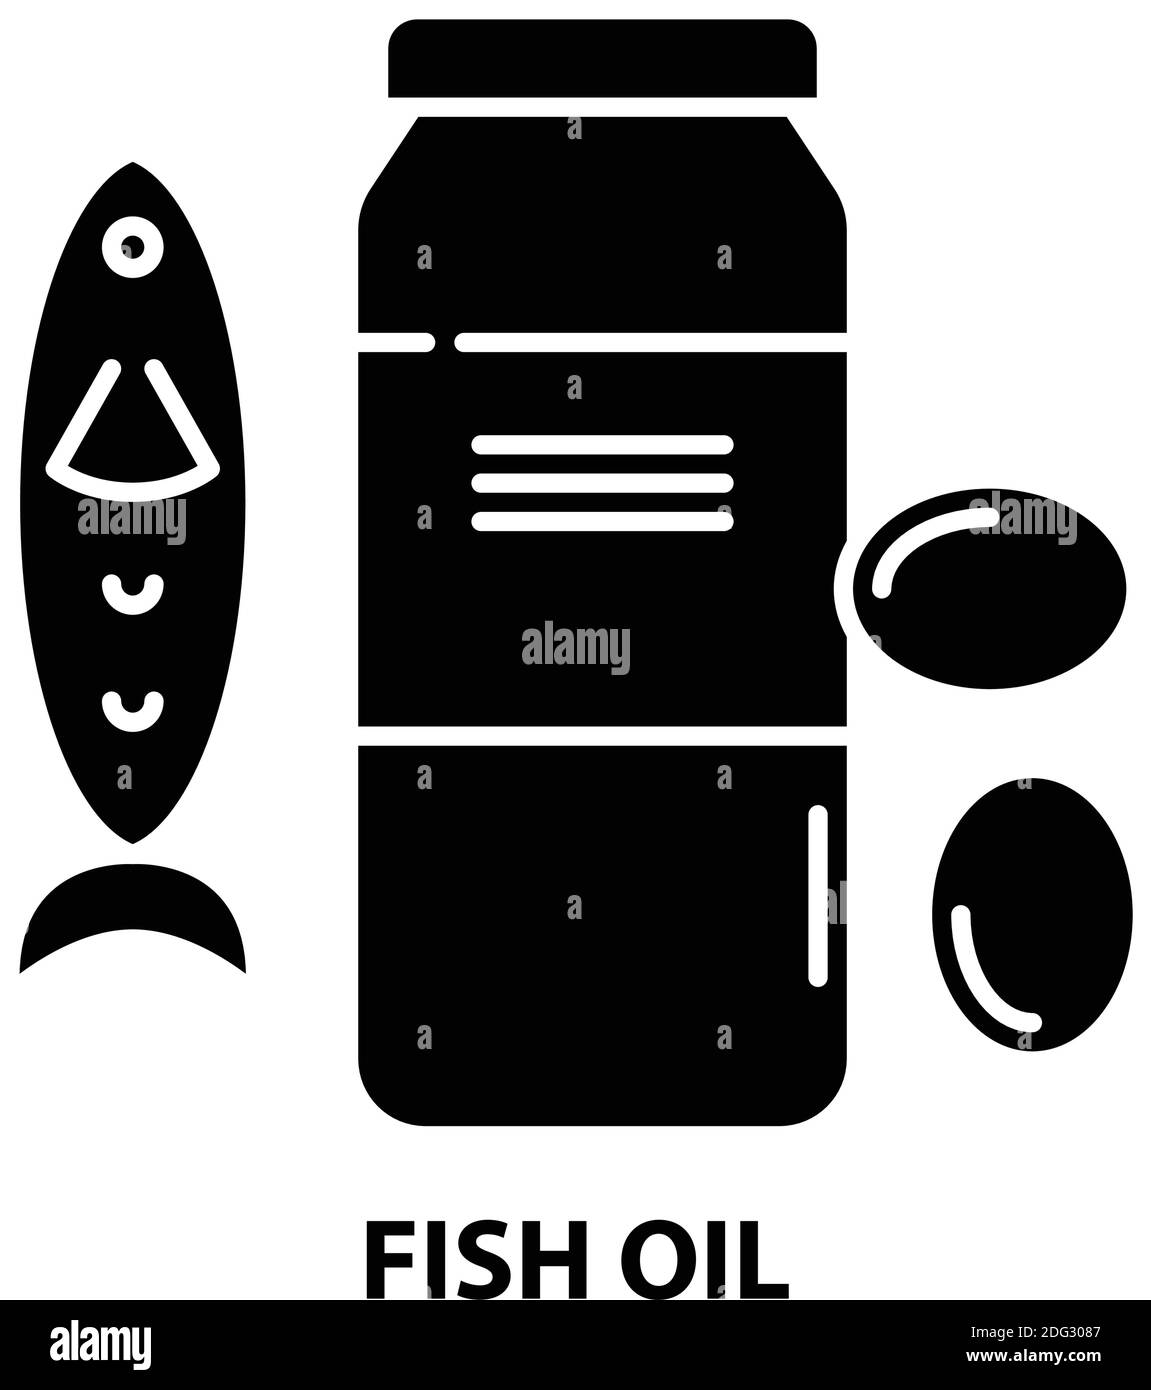 Fischölsymbol, schwarzes Vektorzeichen mit editierbaren Konturen, Konzeptdarstellung Stock Vektor